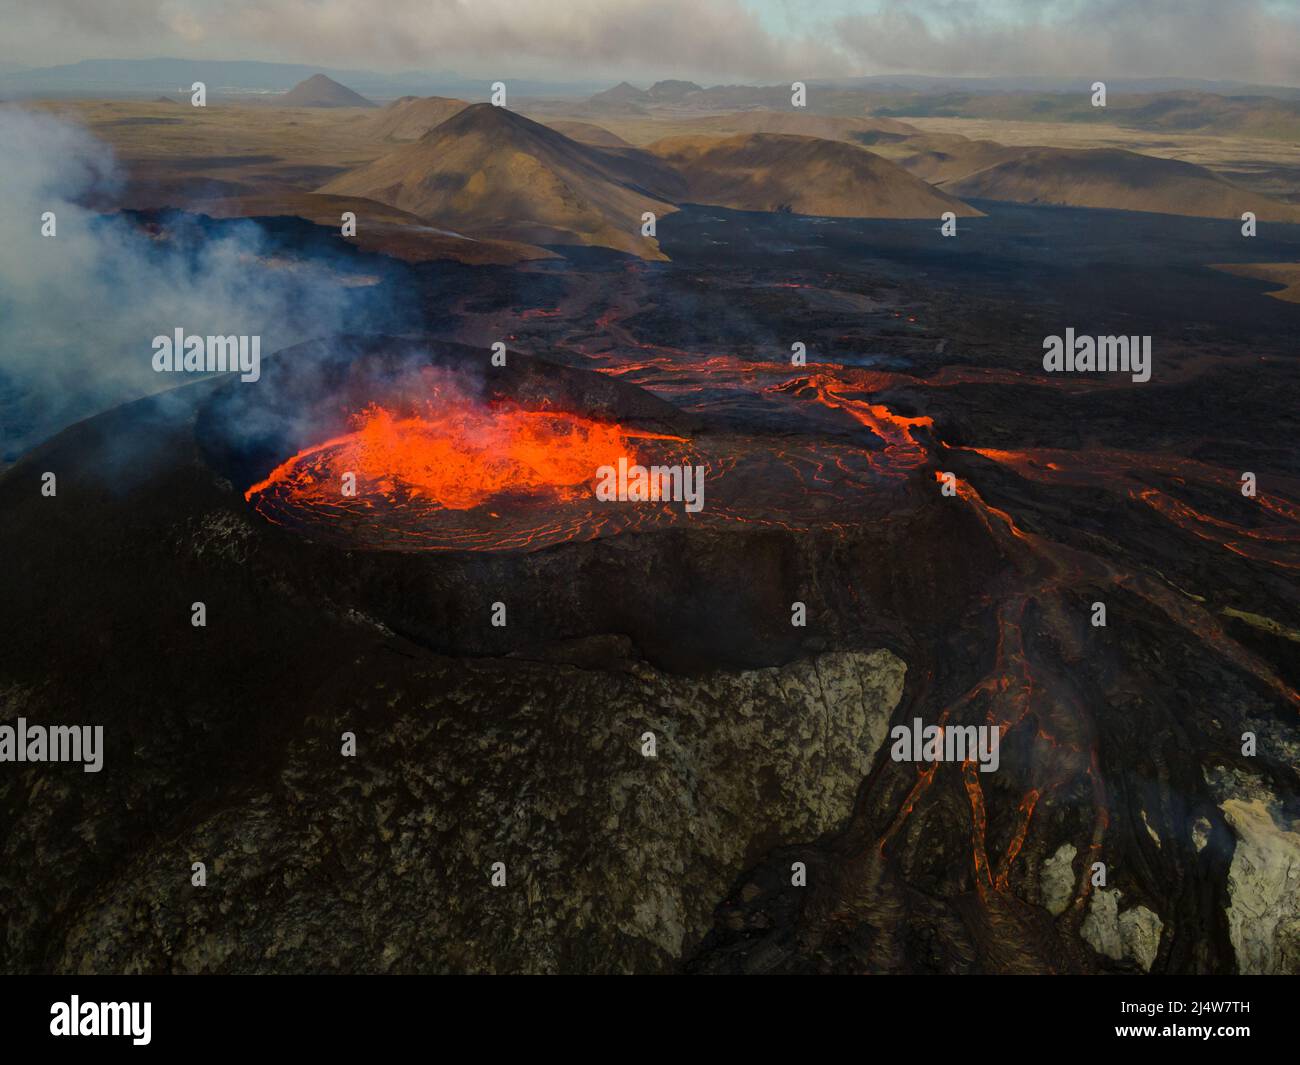 Vue aérienne impressionnante de l'explosion de lave rouge du volcan actif en Islande Banque D'Images